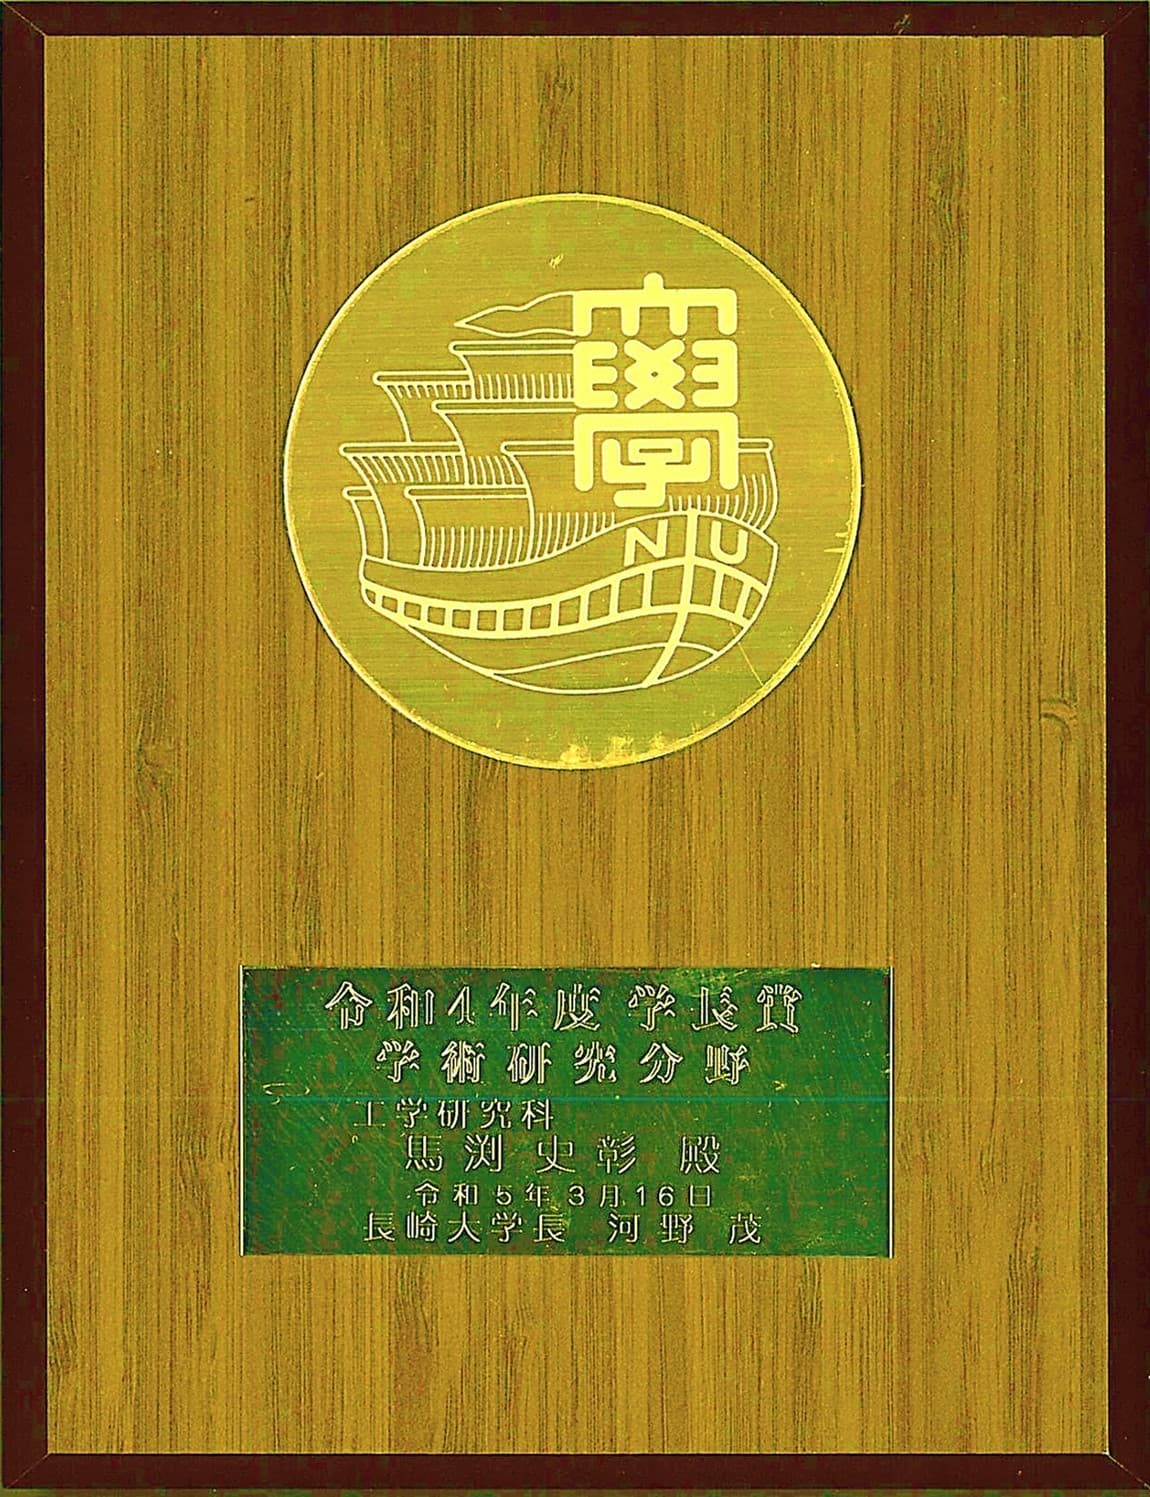 馬渕史彰君(M2)が、学長賞(学術研究分野)を受賞しました。2023/03/16